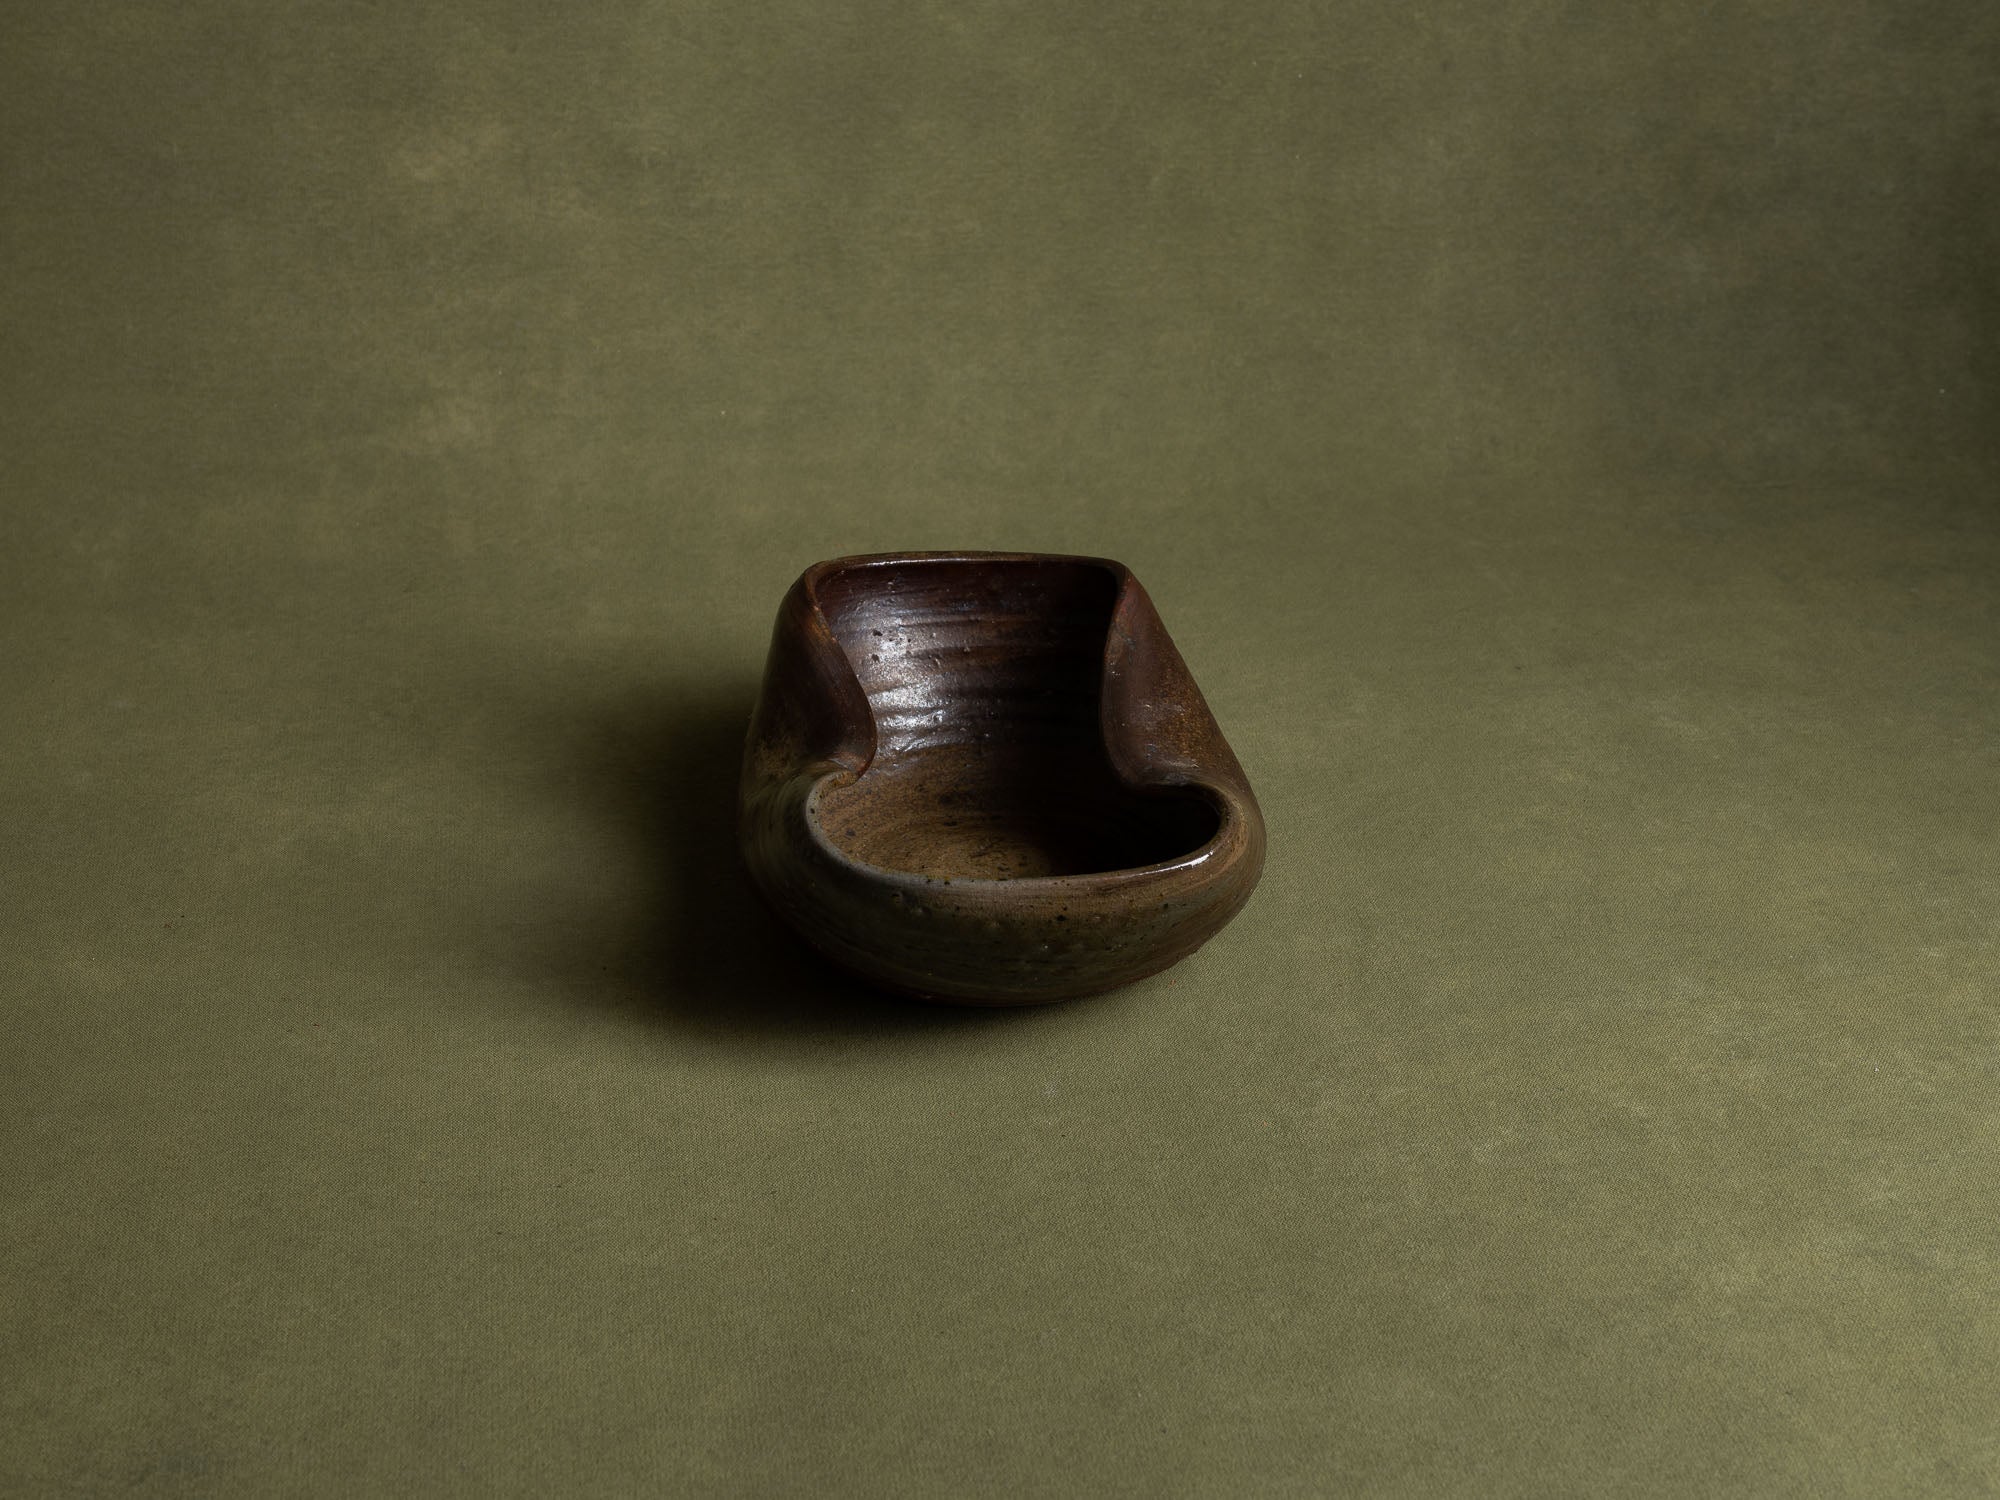 Coupe de forme libre en grès de la Borne, France (début du XXe siècle)..Stoneware free form bowl from La Borne, France (early 20th century)